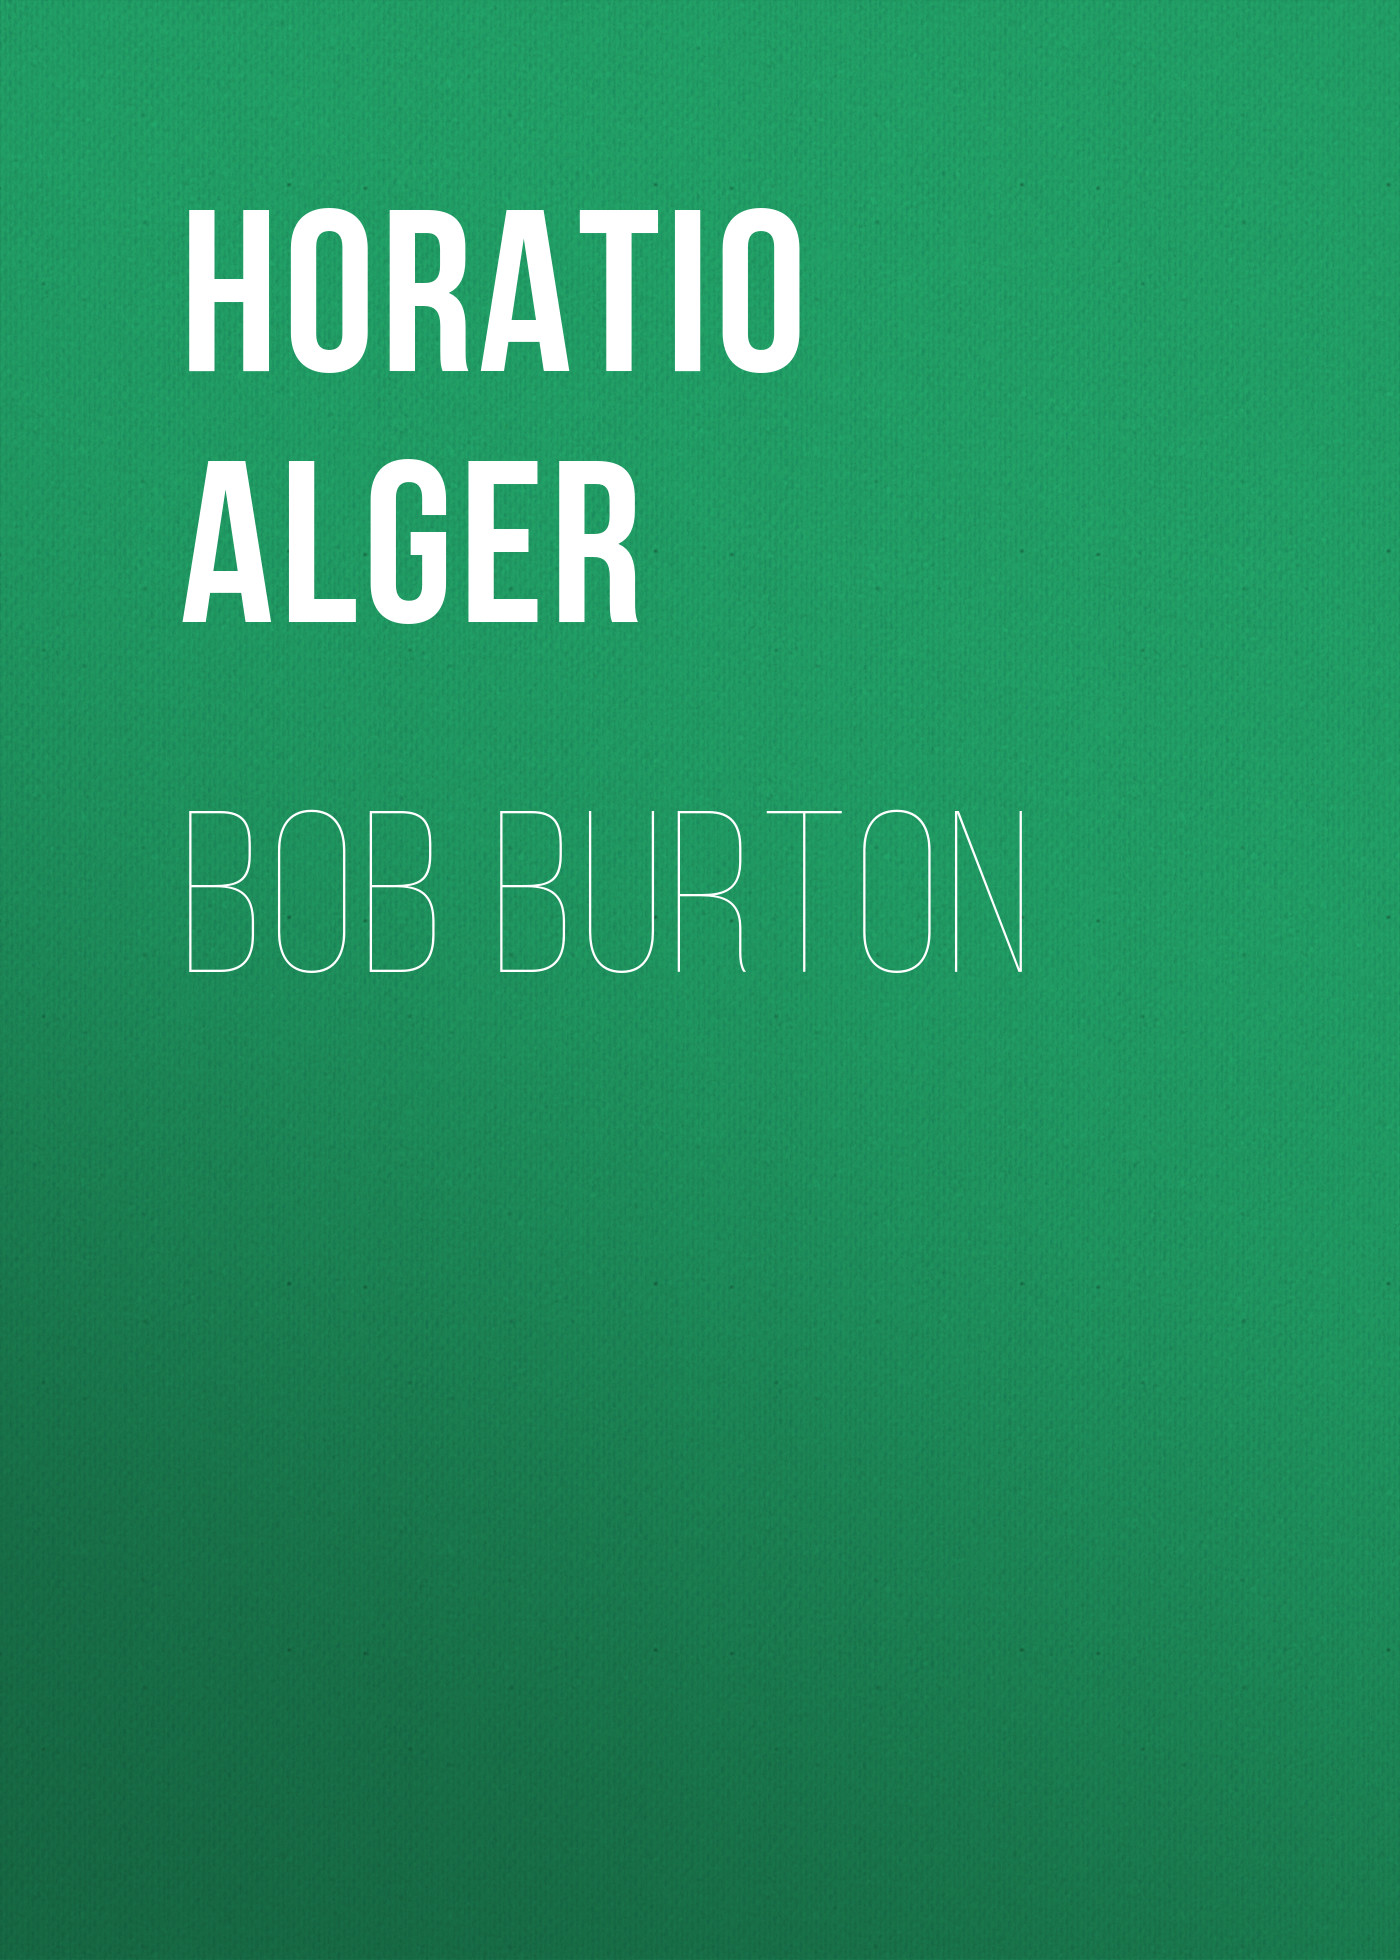 Книга Bob Burton из серии , созданная Horatio Alger, может относится к жанру Зарубежная классика, Иностранные языки. Стоимость электронной книги Bob Burton с идентификатором 23171595 составляет 5.99 руб.